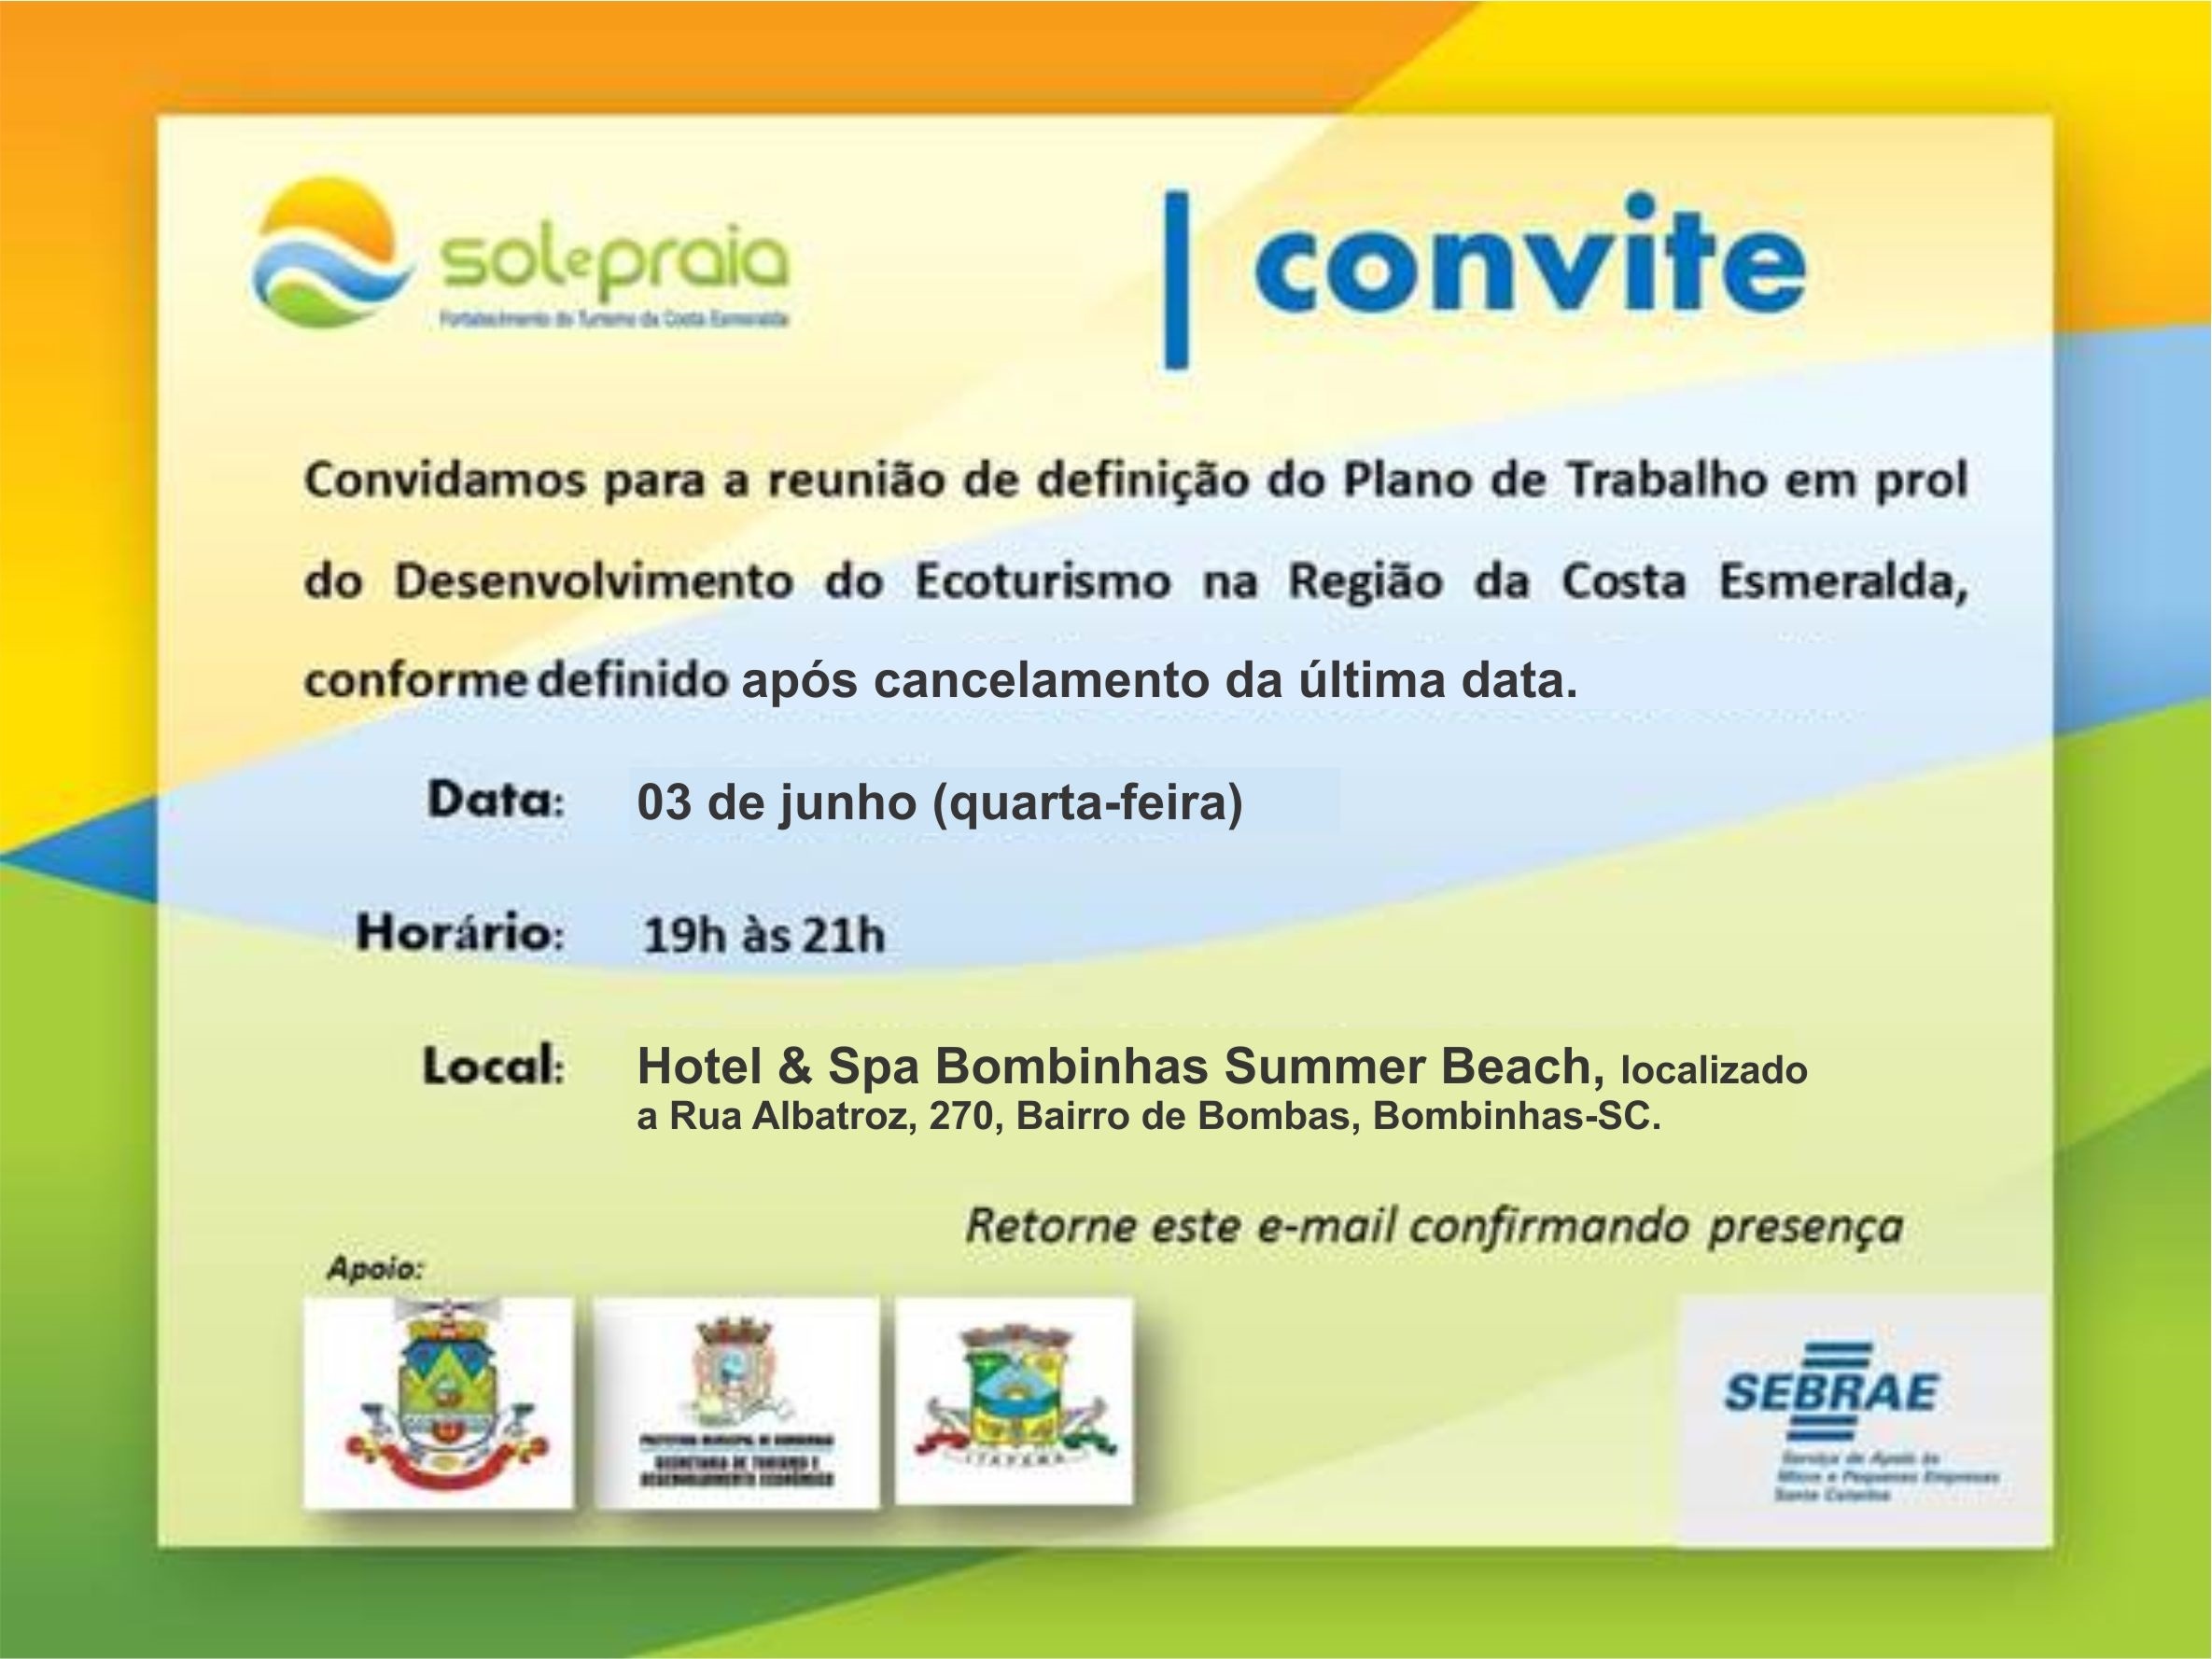 Convite para reunião de trabalho para o desenvolvimento do Ecoturismo na região.